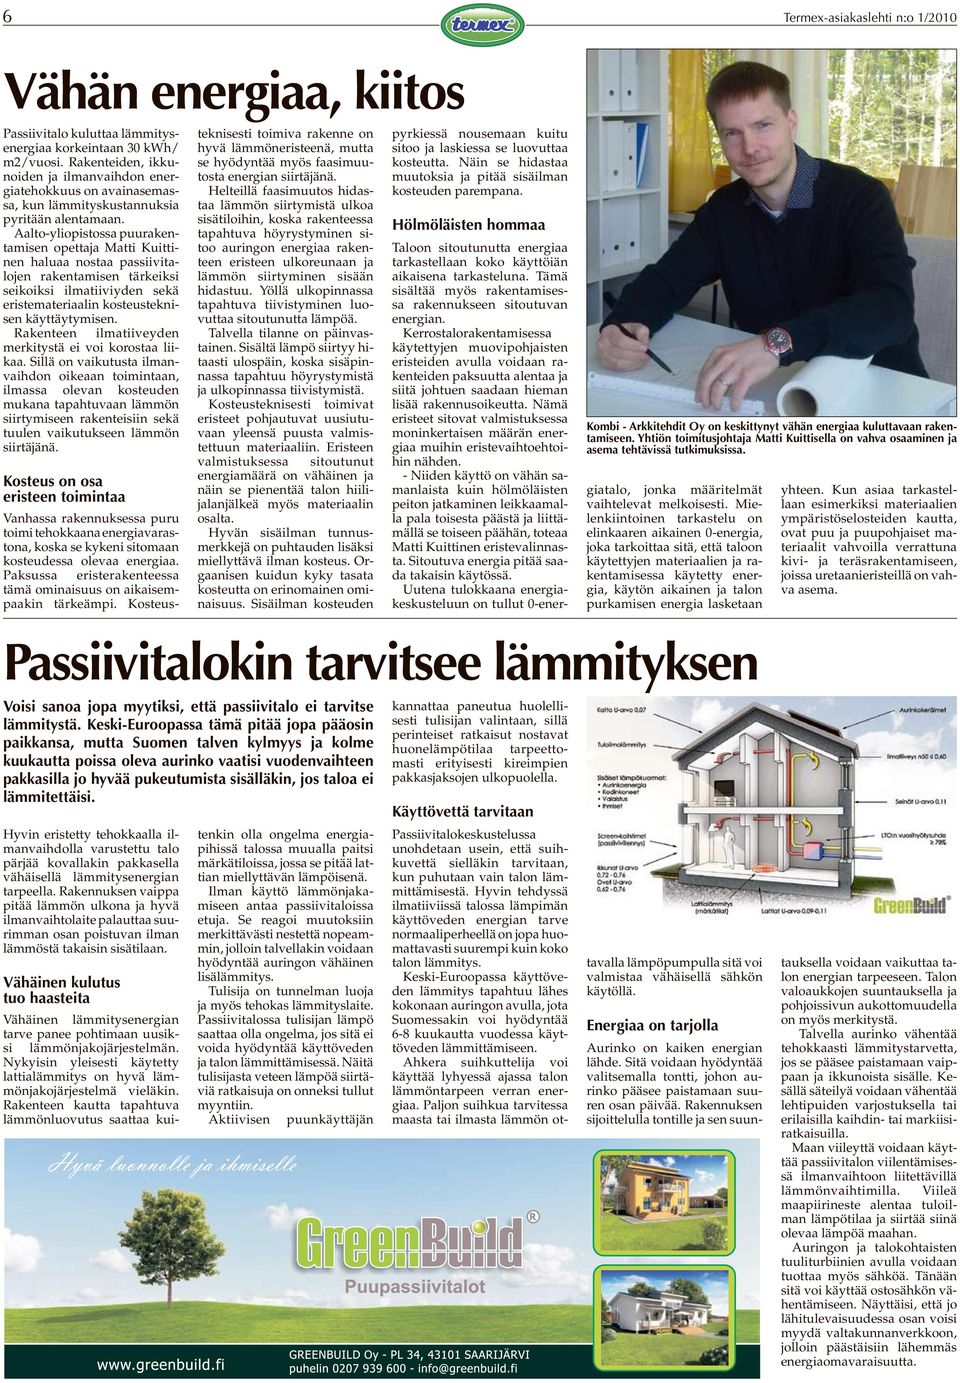 Aalto-yliopistossa puurakentamisen opettaja Matti Kuittinen haluaa nostaa passiivitalojen rakentamisen tärkeiksi seikoiksi ilmatiiviyden sekä eristemateriaalin kosteusteknisen käyttäytymisen.